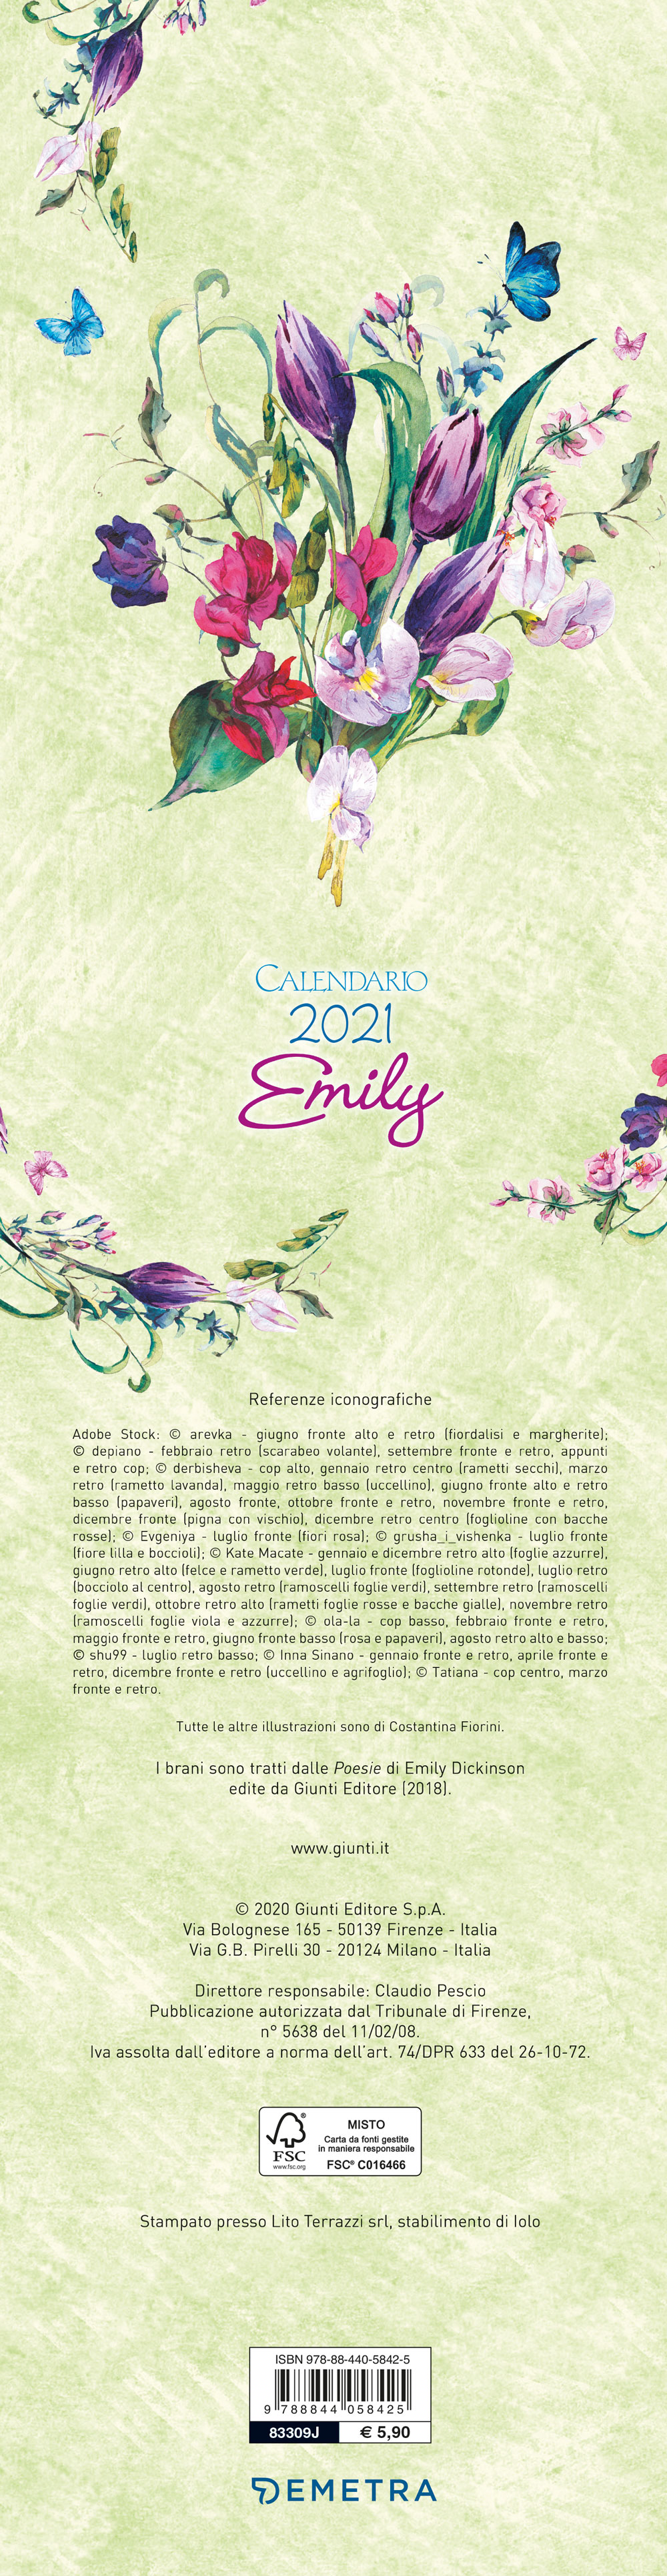 Calendario Emily 2021, da parete, 12,5x48 cm